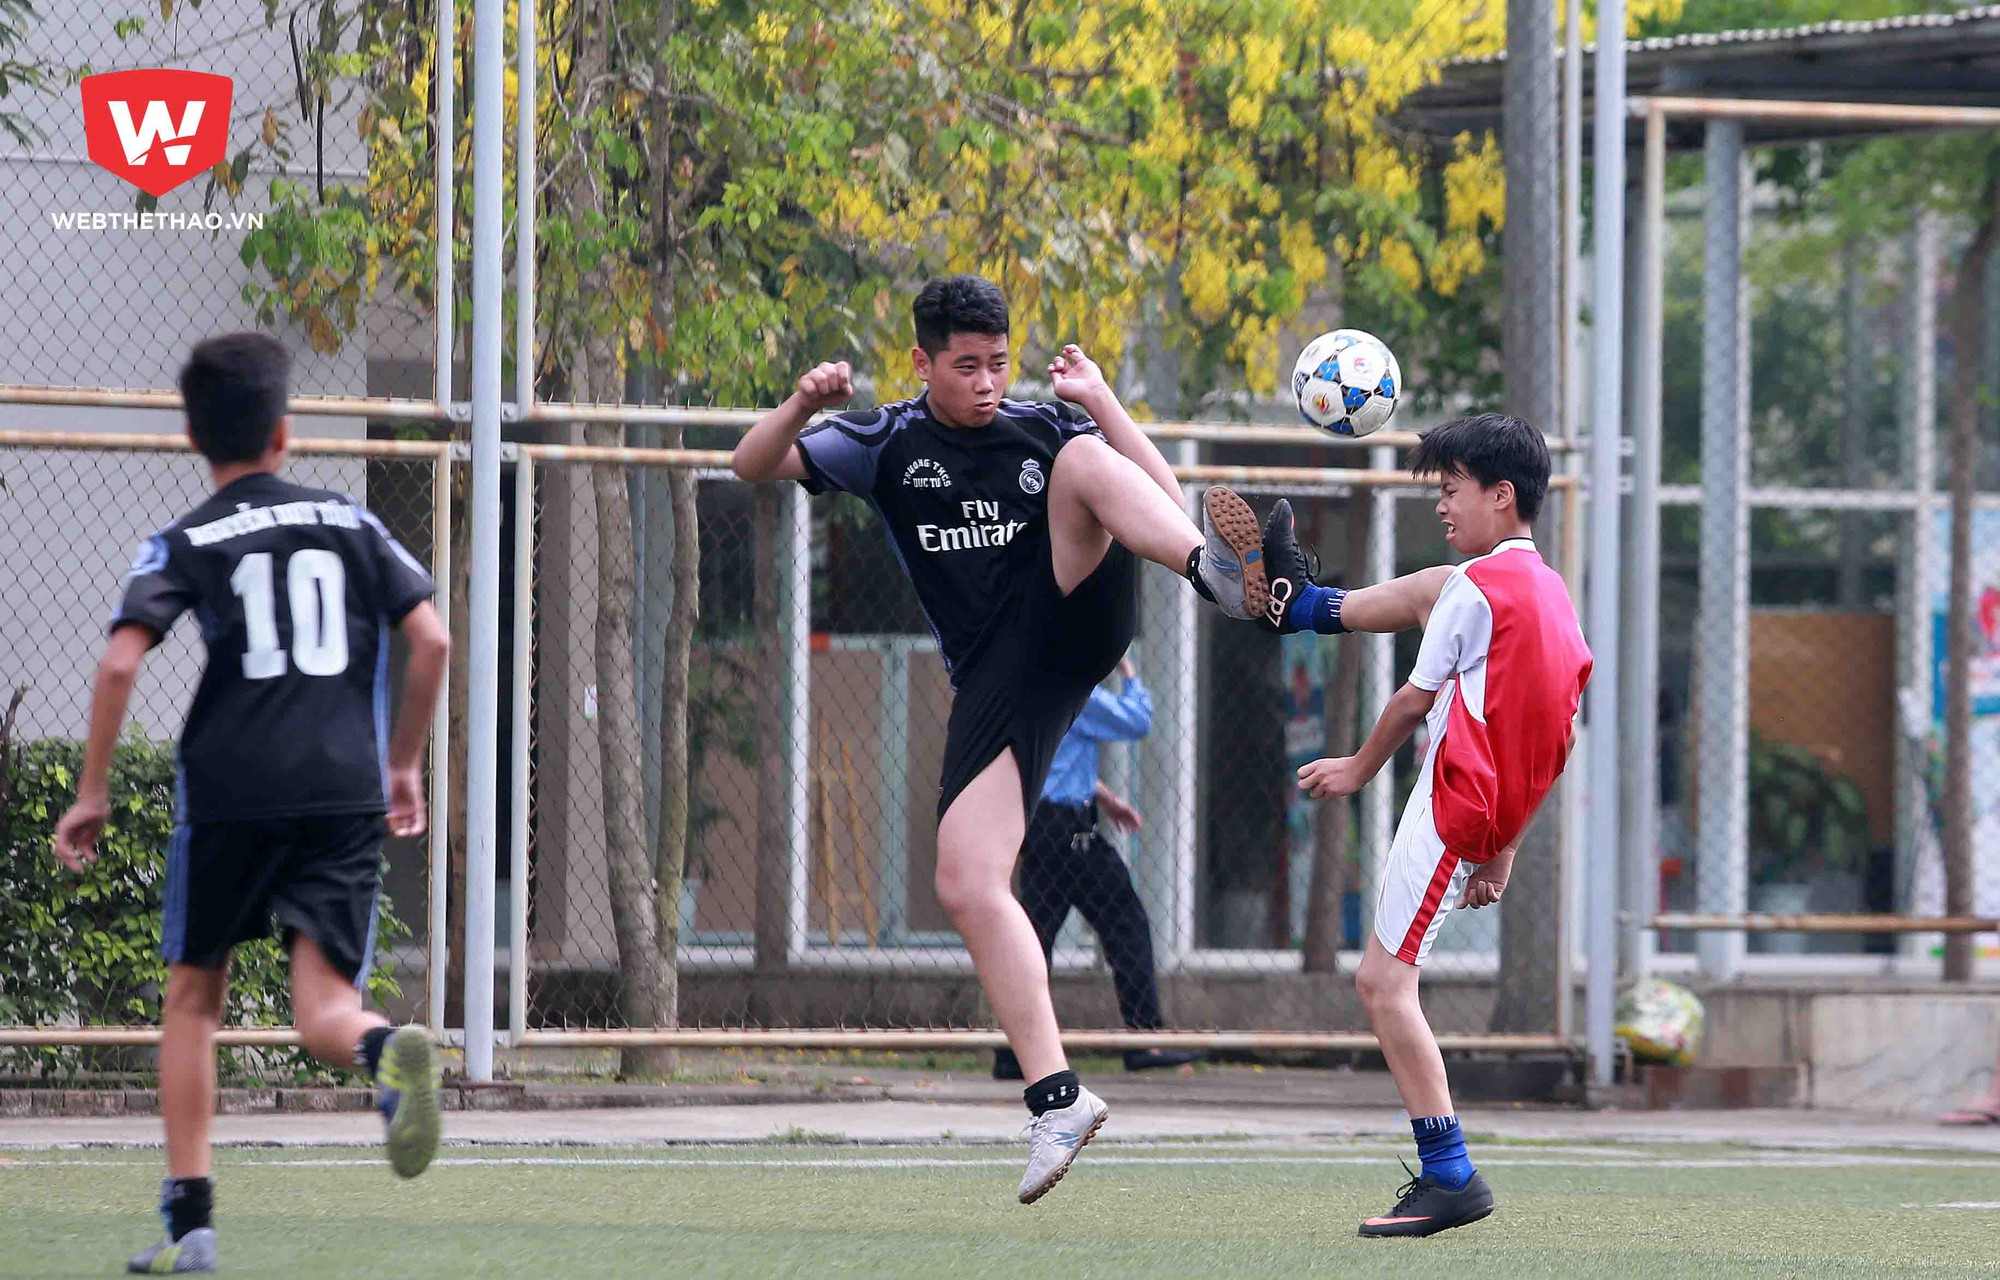 Trận chung kết tại vòng loại khu vực Hà Nội festival bóng đá học đường U13 giữa hai đội Phú Đô và Dục Tú xứng đáng được coi là trận đấu hay nhất, đáng xem nhất...